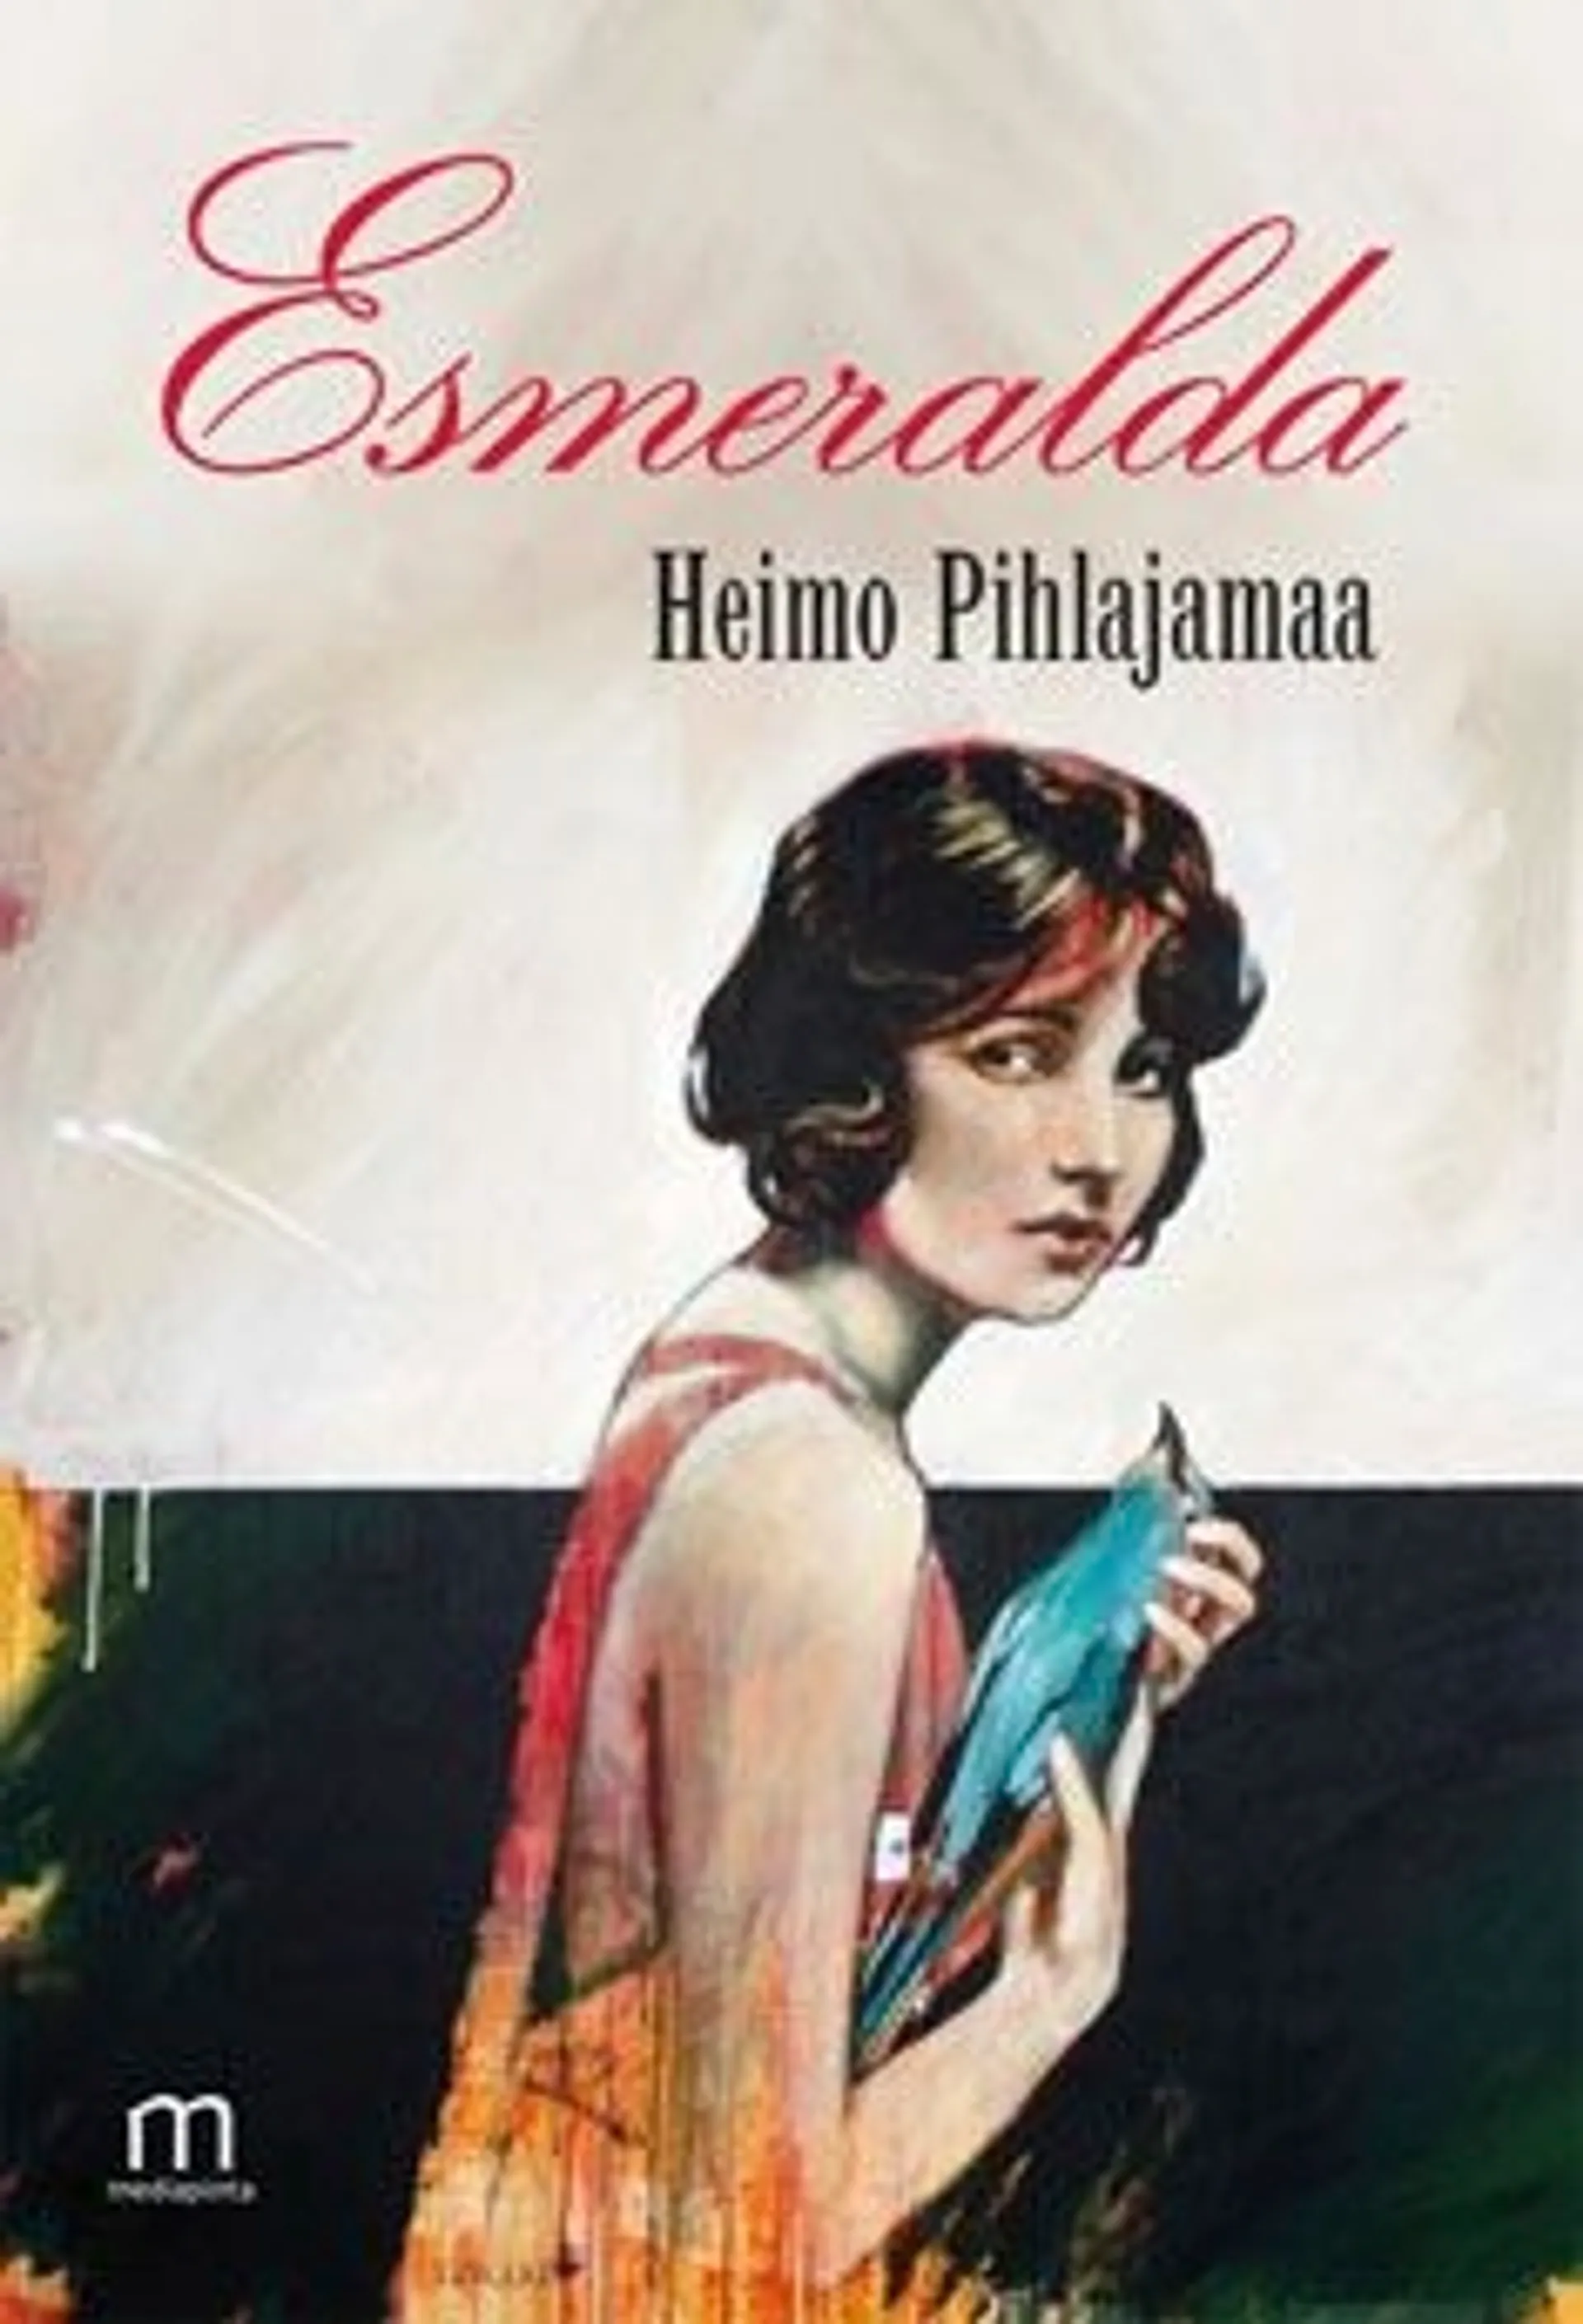 Pihlajamaa, Esmeralda